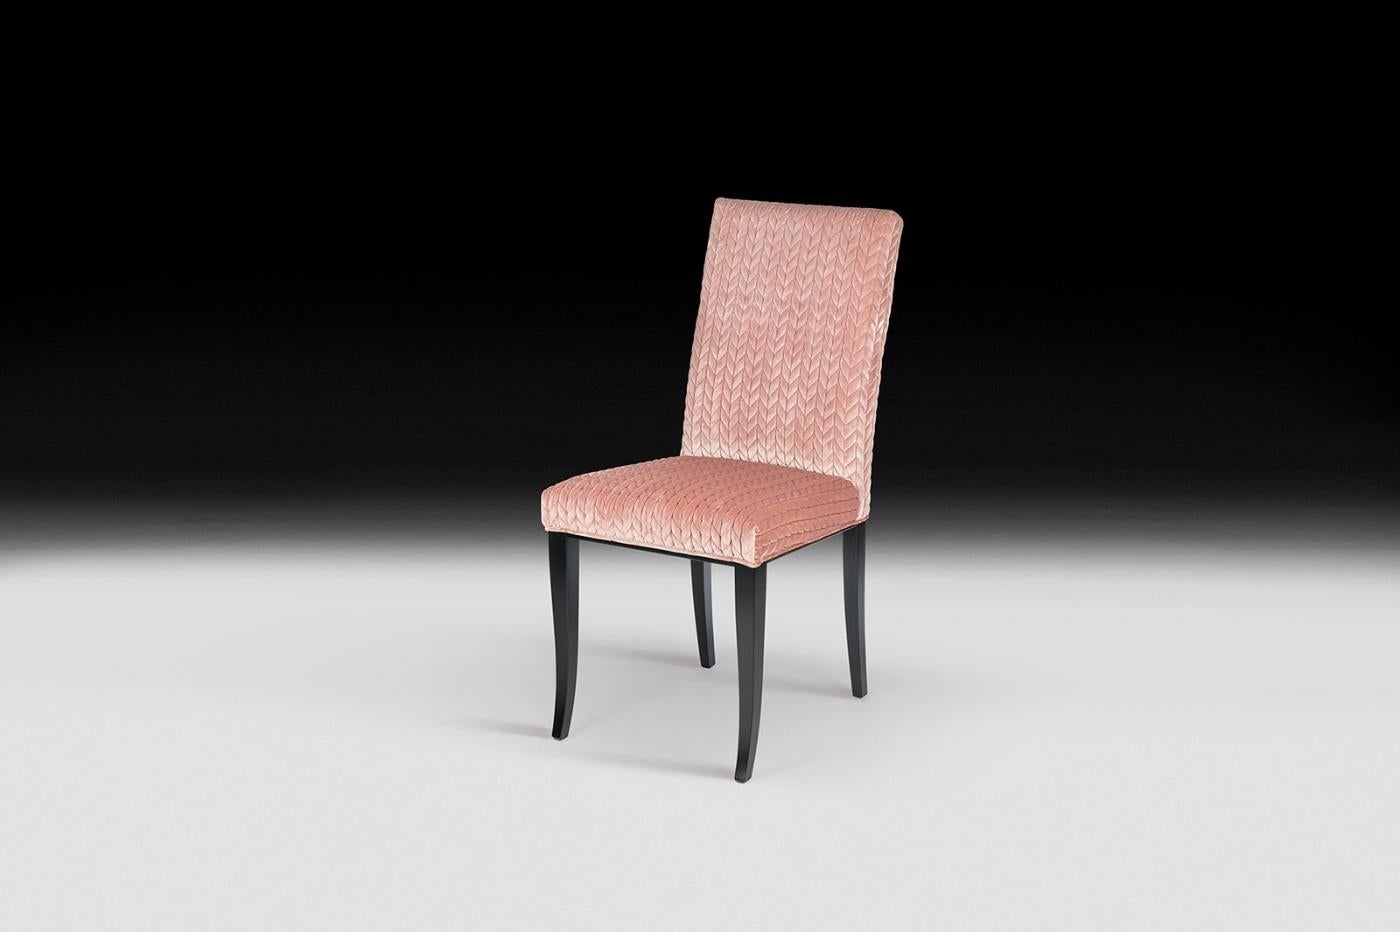 Les meubles VG représentent le luxe en termes d'exclusivité, de distinction et de haute qualité. Ils sont le fruit d'un design sophistiqué et exclusif à forte identité et sont le résultat d'une attention méticuleuse portée aux détails typiques des